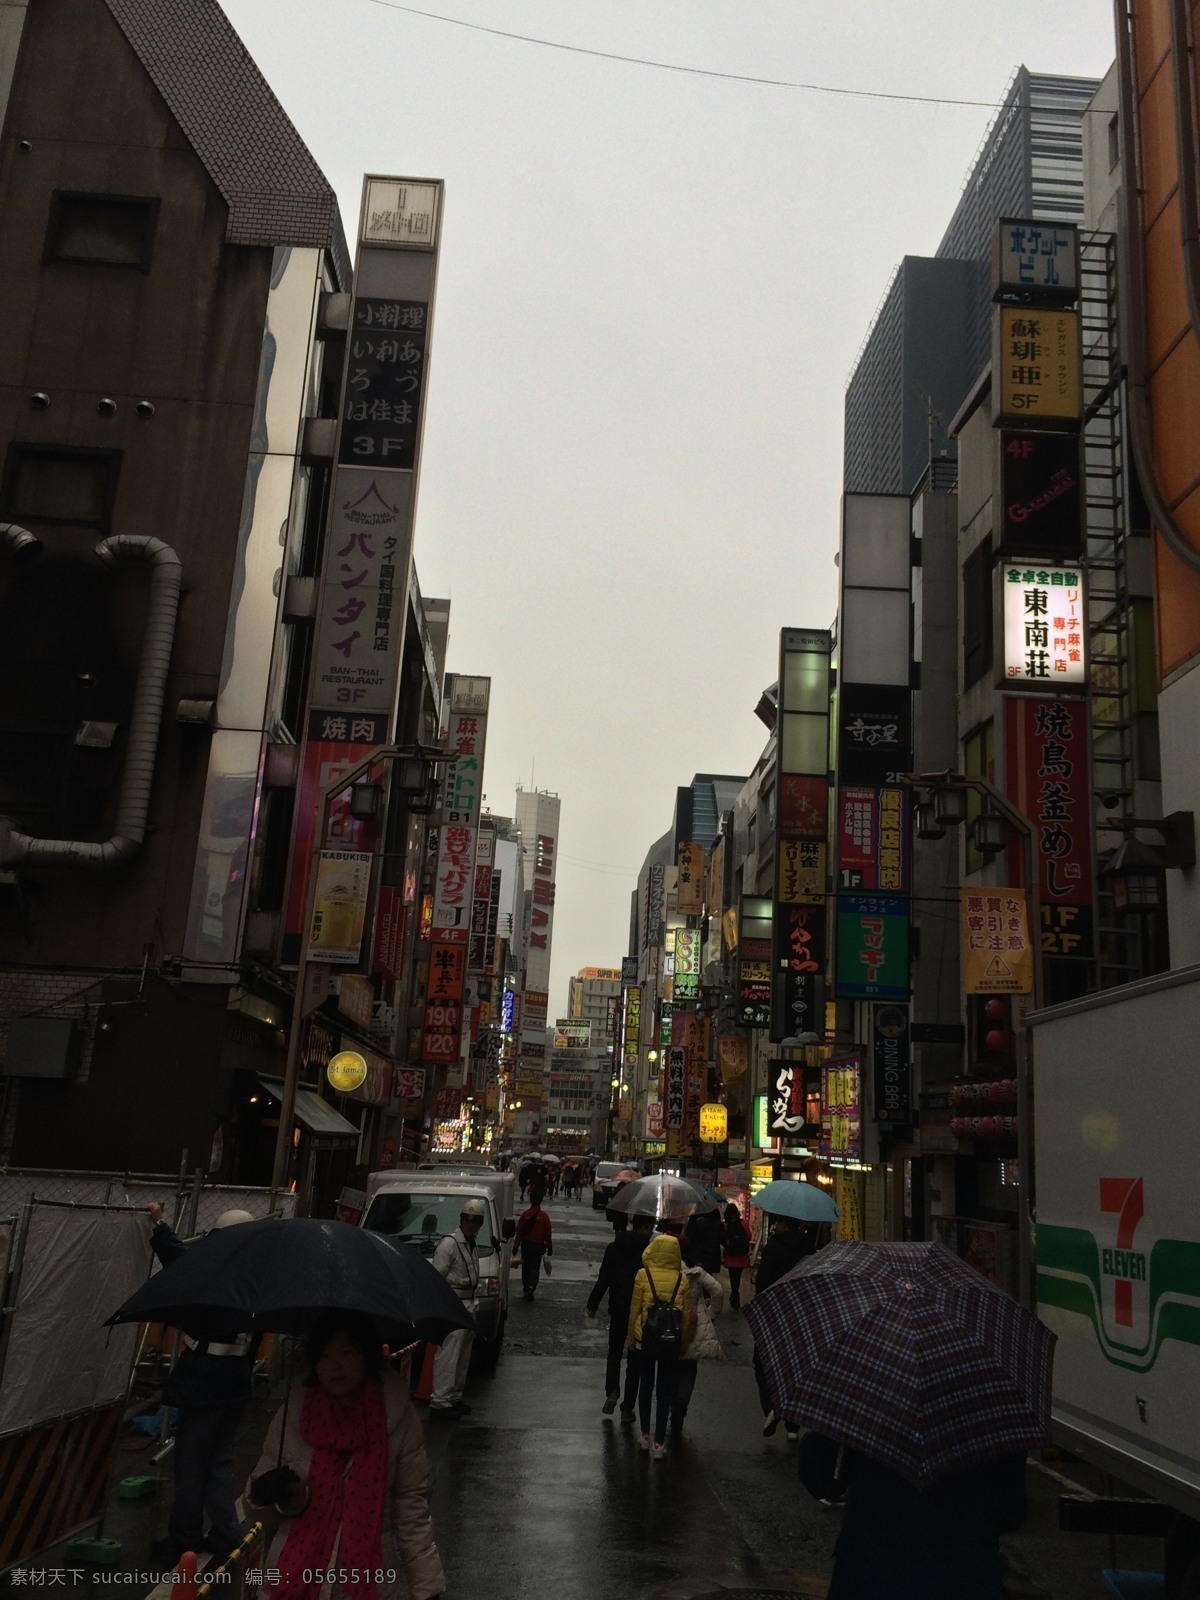 新宿歌舞伎街 东京 新宿 歌舞伎 日本 红灯区 街道 街头 旅游摄影 国外旅游